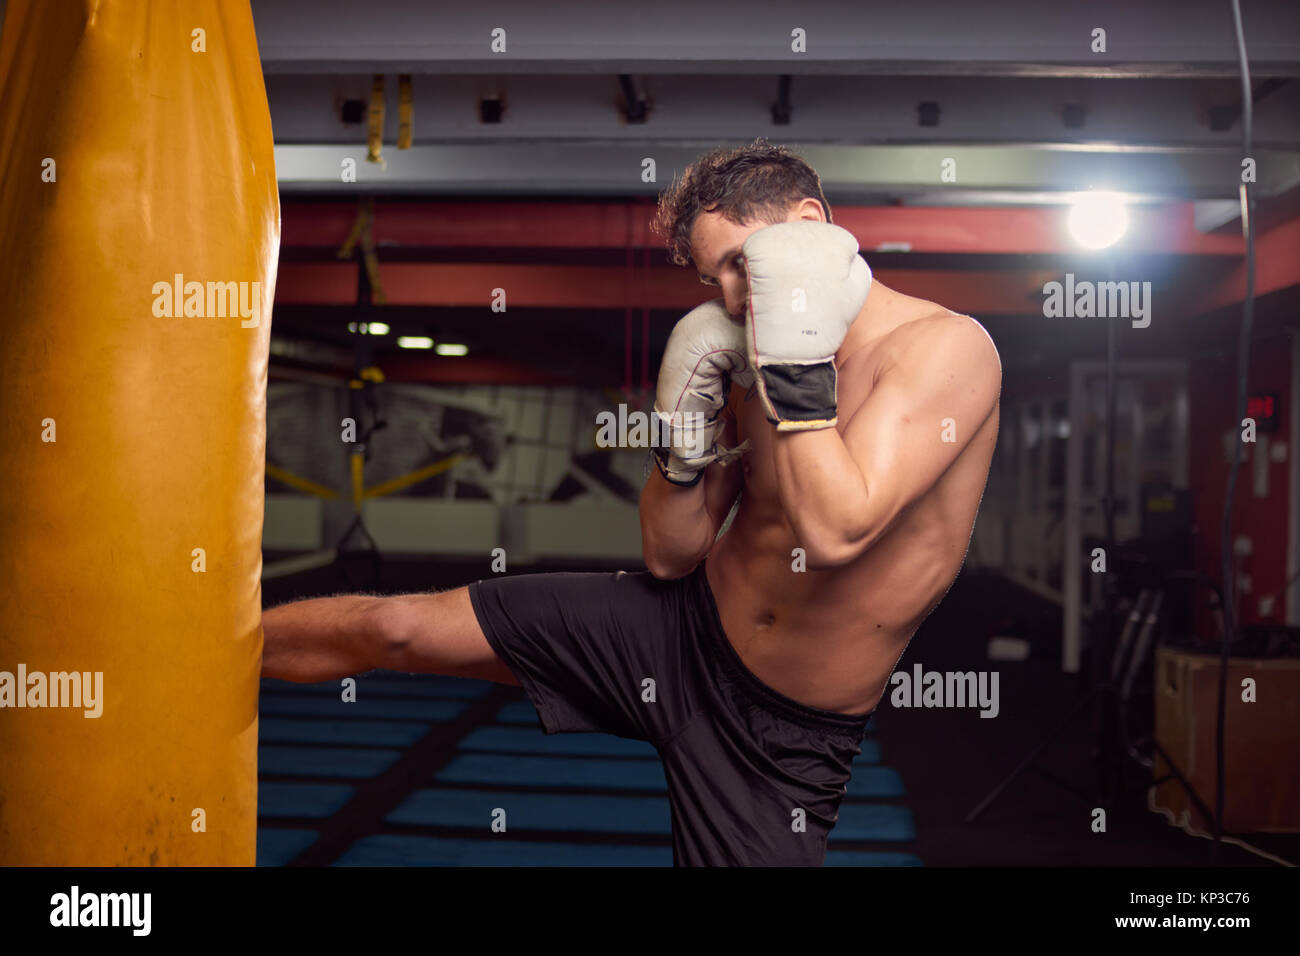 Un joven hombre descamisado, boxeador pierna golpeando saco de boxeo, practicando en interiores, sala de gimnasia, usando guantes de boxeo, disparos en la parte superior del cuerpo. Foto de stock